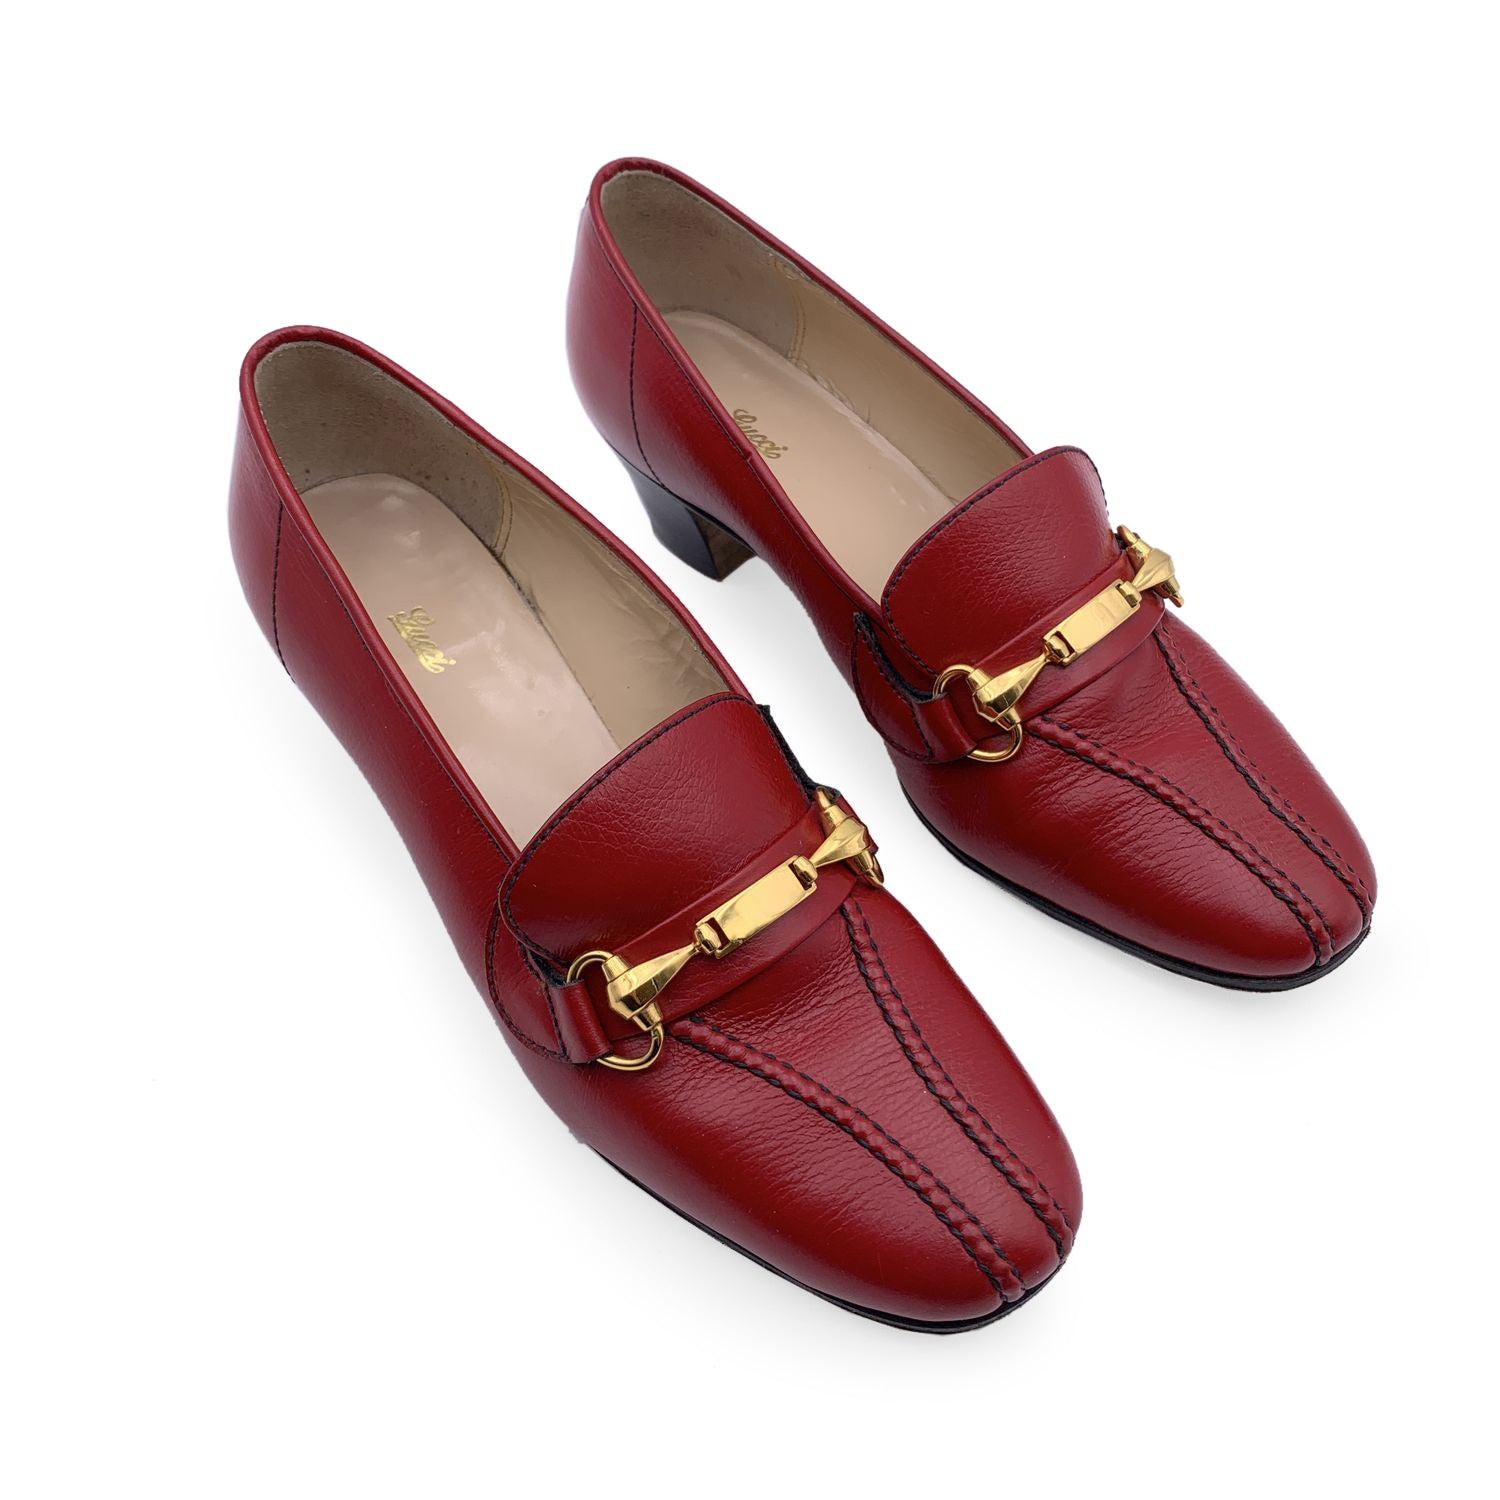 Schöne Vintage GUCCI rote Leder halbhohe Schuhe. Gefertigt aus rotem Leder mit goldfarbenen Horsebit-Details an den Zehen. Sie haben eine runde Zehenpartie und sind zum Hineinschlüpfen geeignet. Ledersohle. Hergestellt in Italien. Größe: EU 35.5